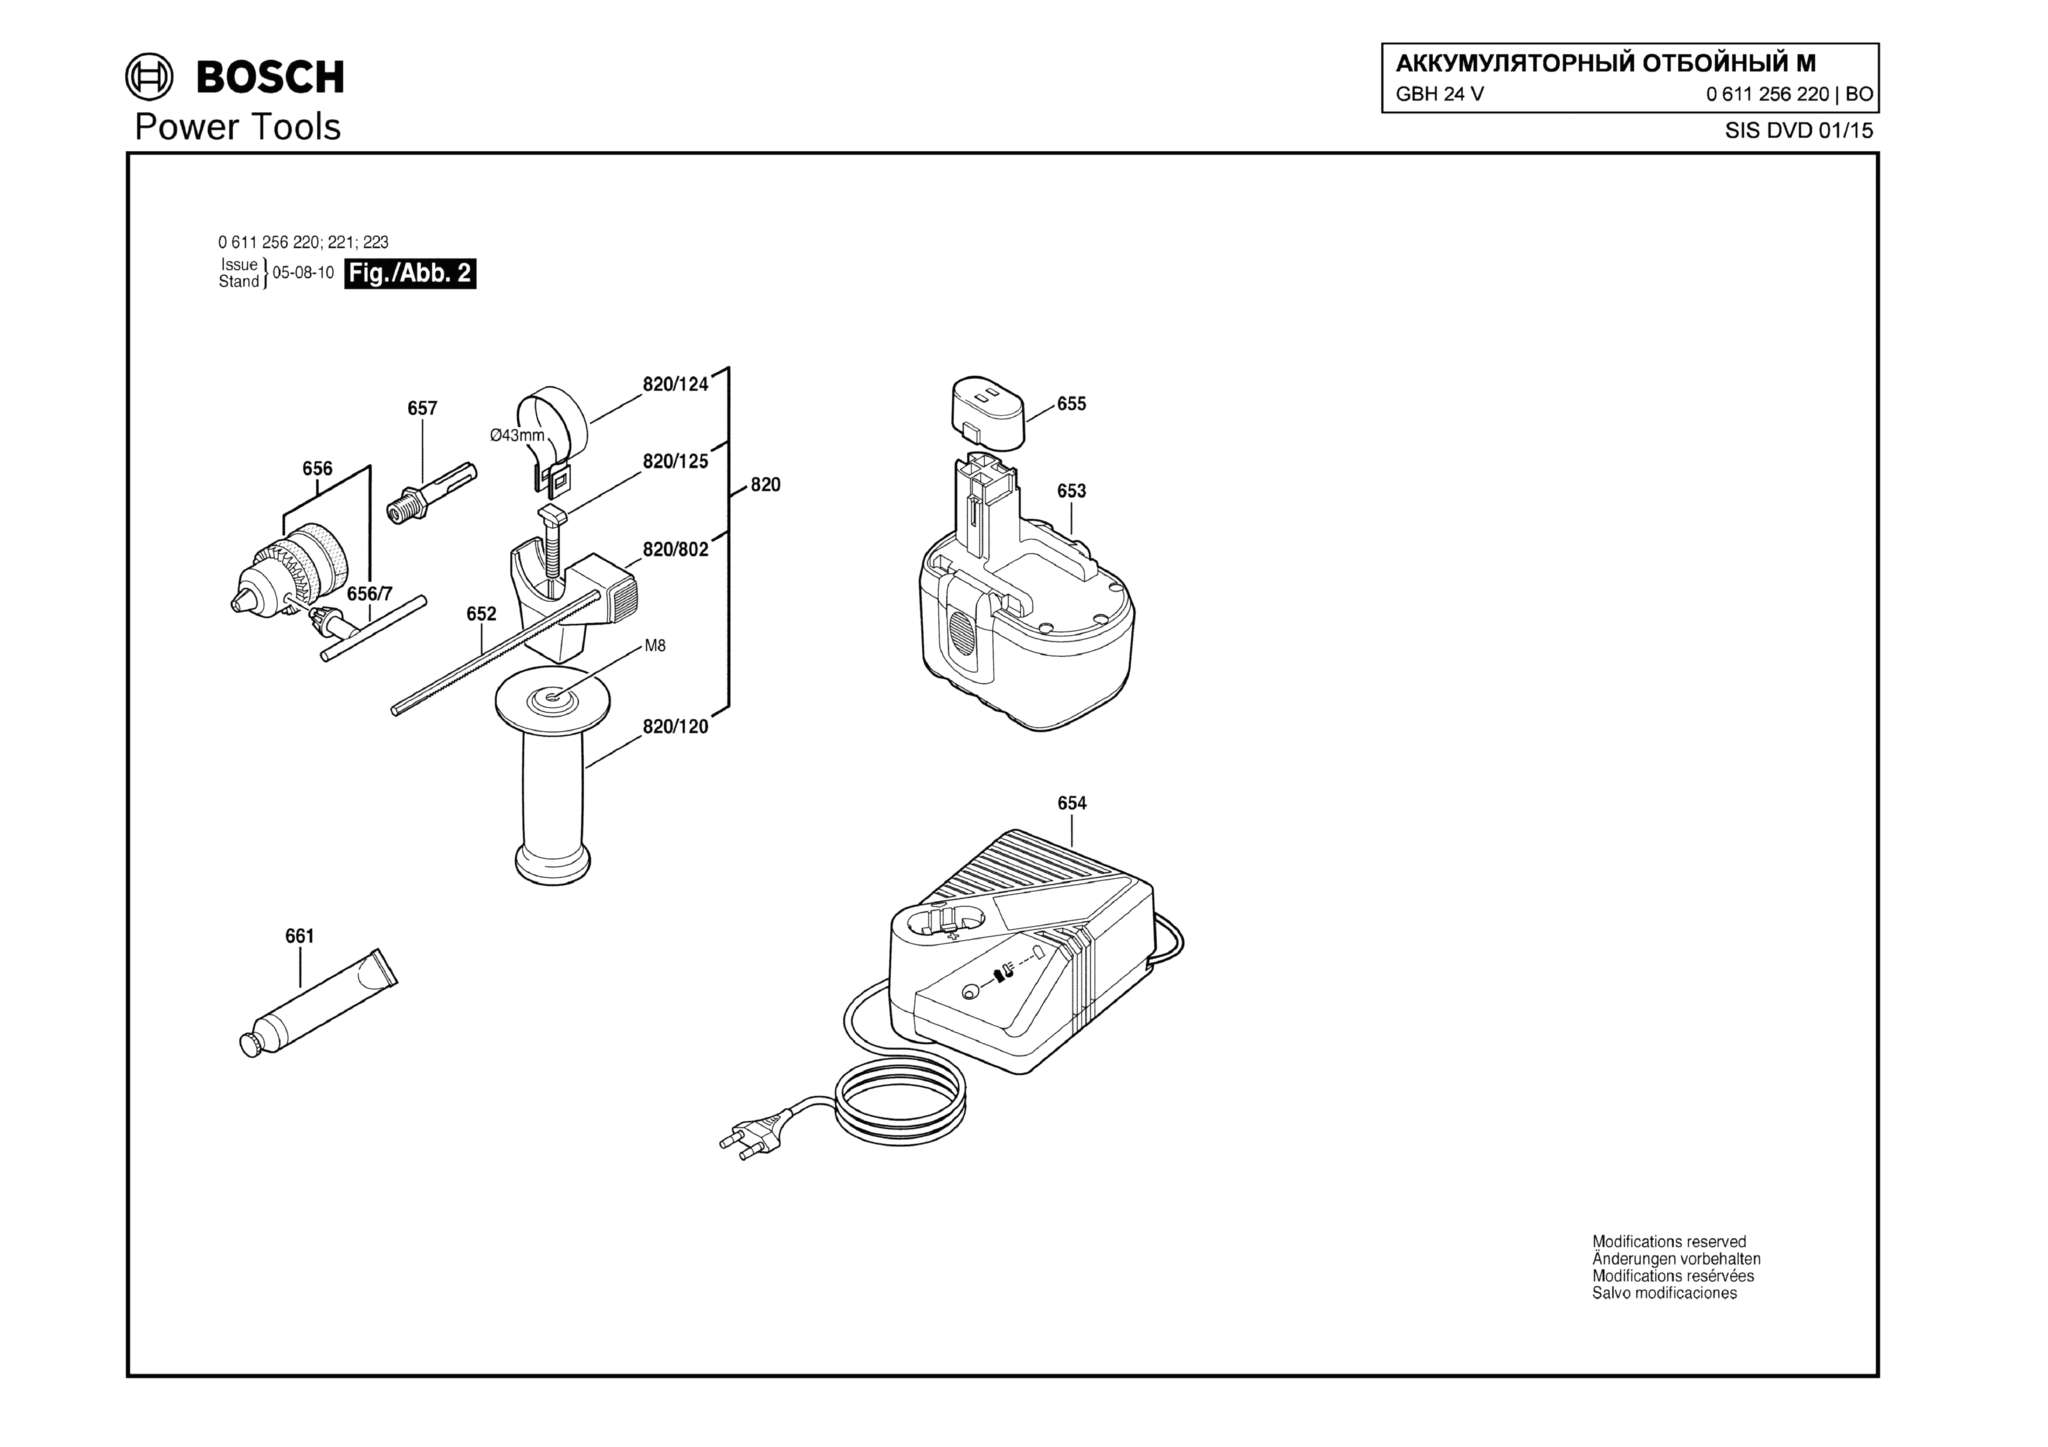 Запчасти, схема и деталировка Bosch GBH 24 V (ТИП 0611256220) (ЧАСТЬ 2)